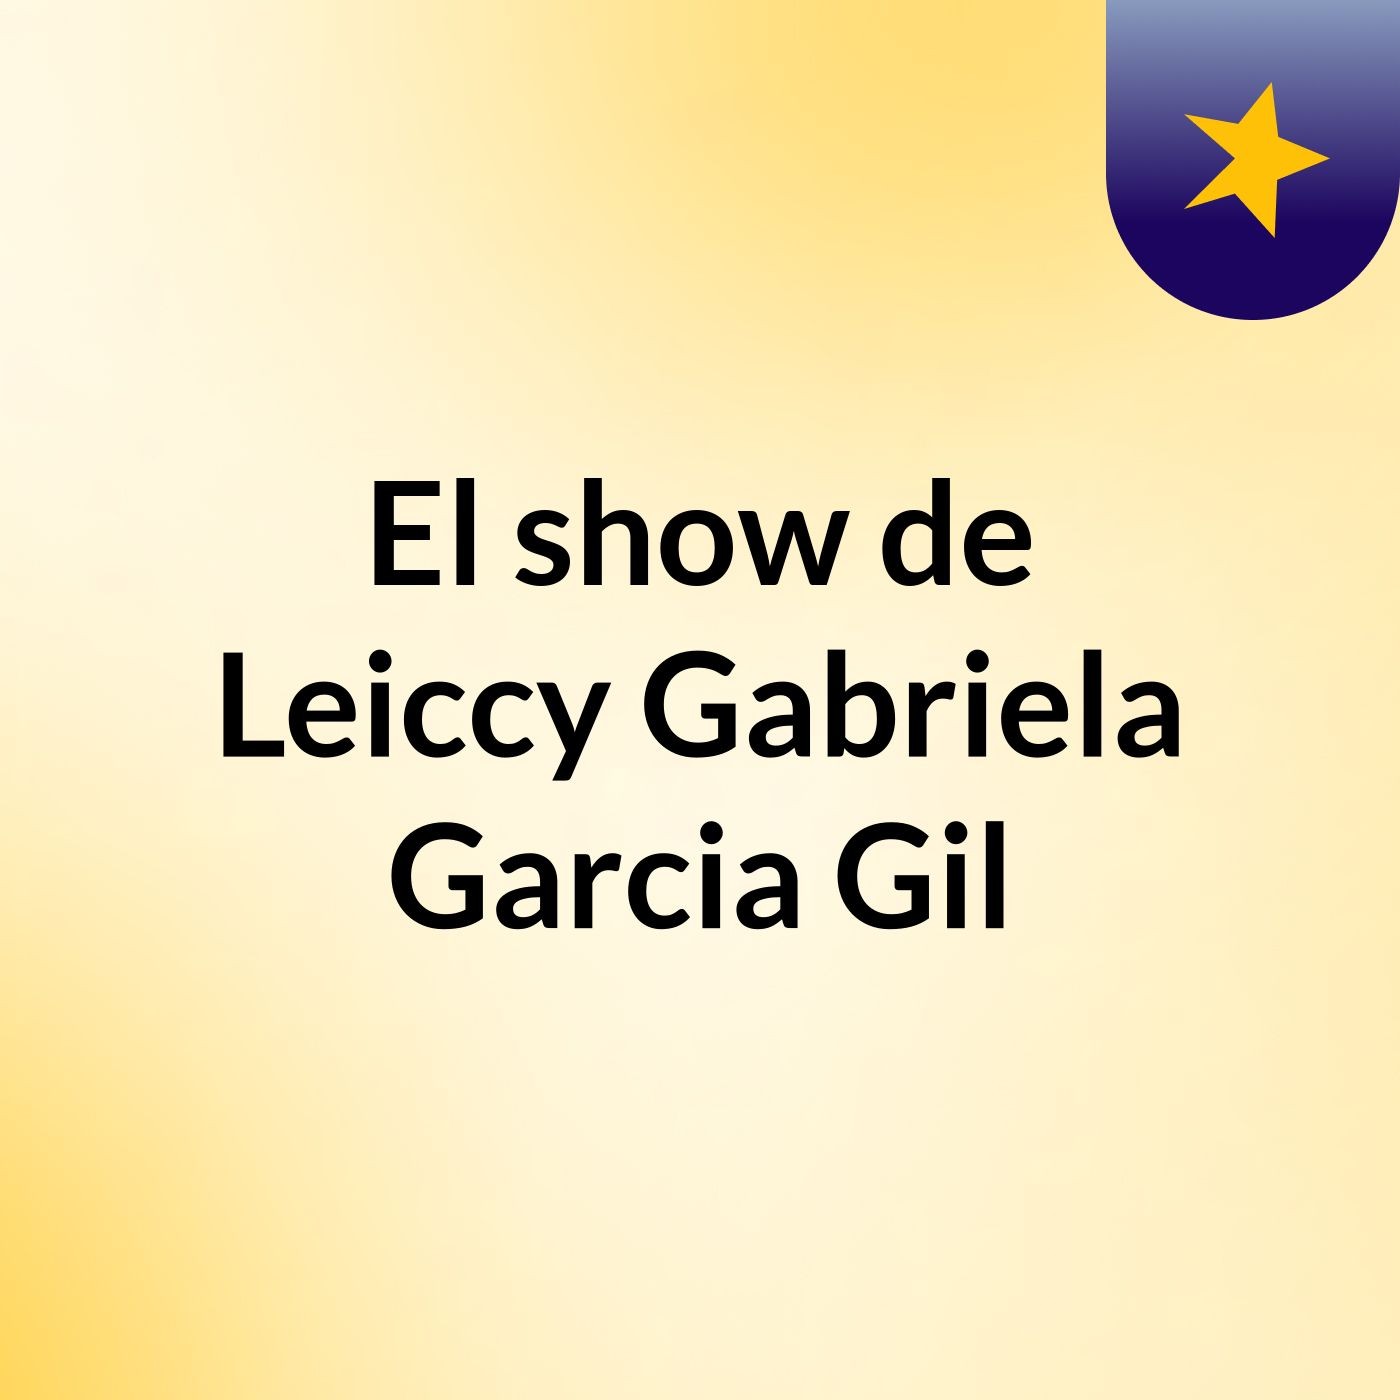 El show de Leiccy Gabriela Garcia Gil